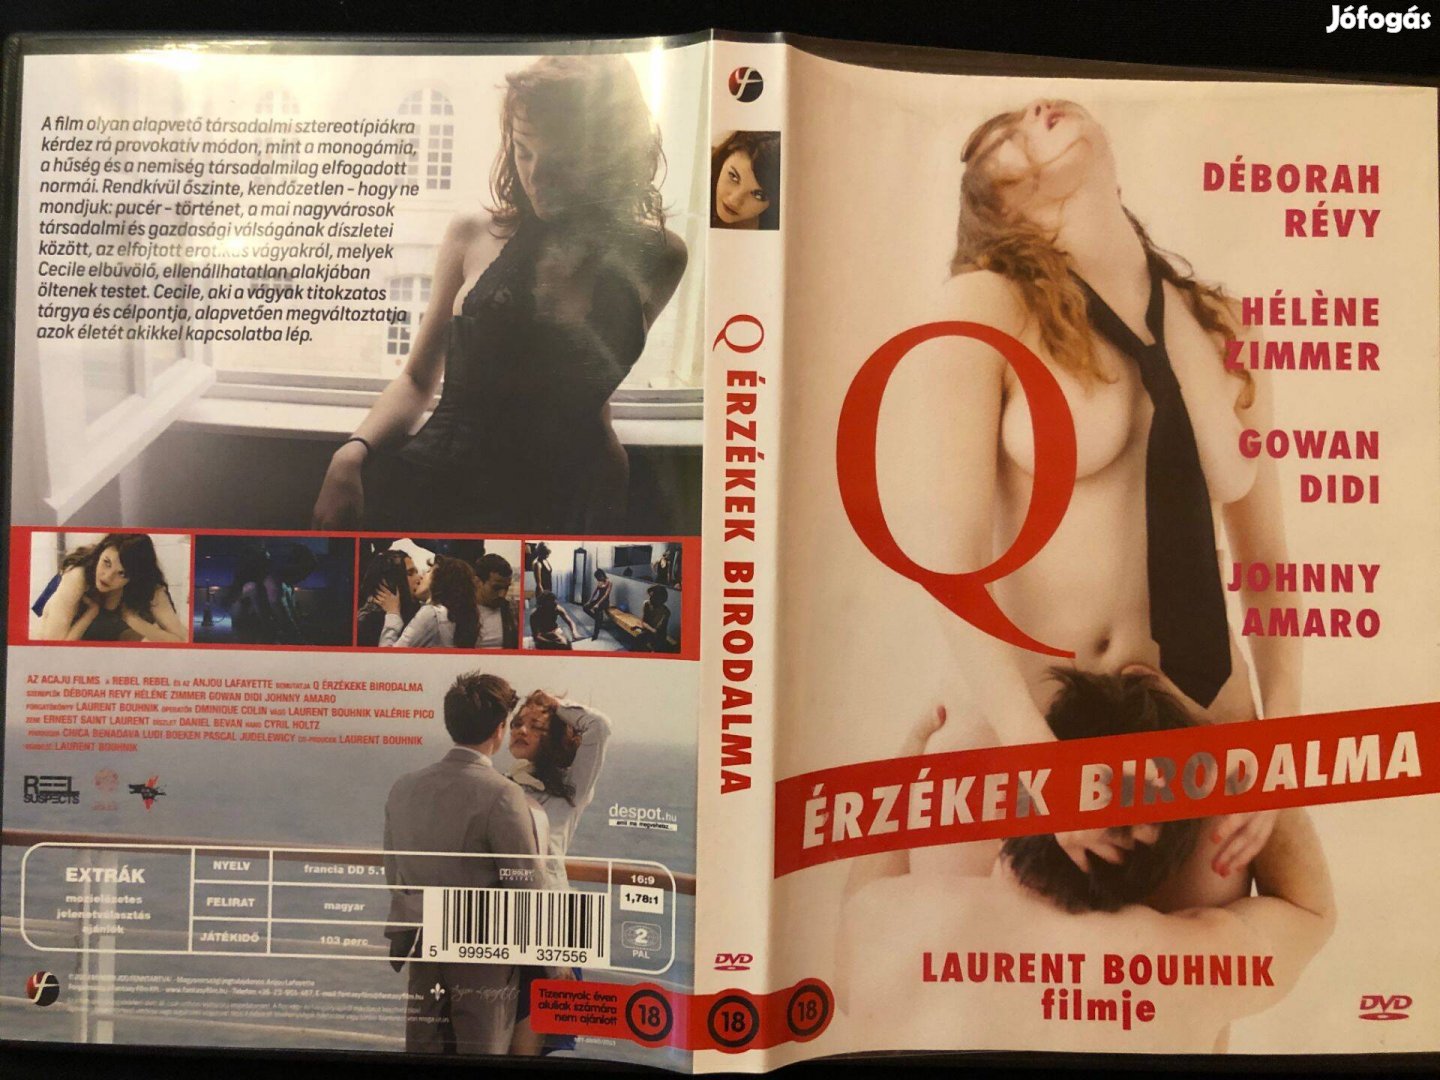 Q Érzékek birodalma (karcmentes, Déborah Révy, Héléne Zimmer) DVD